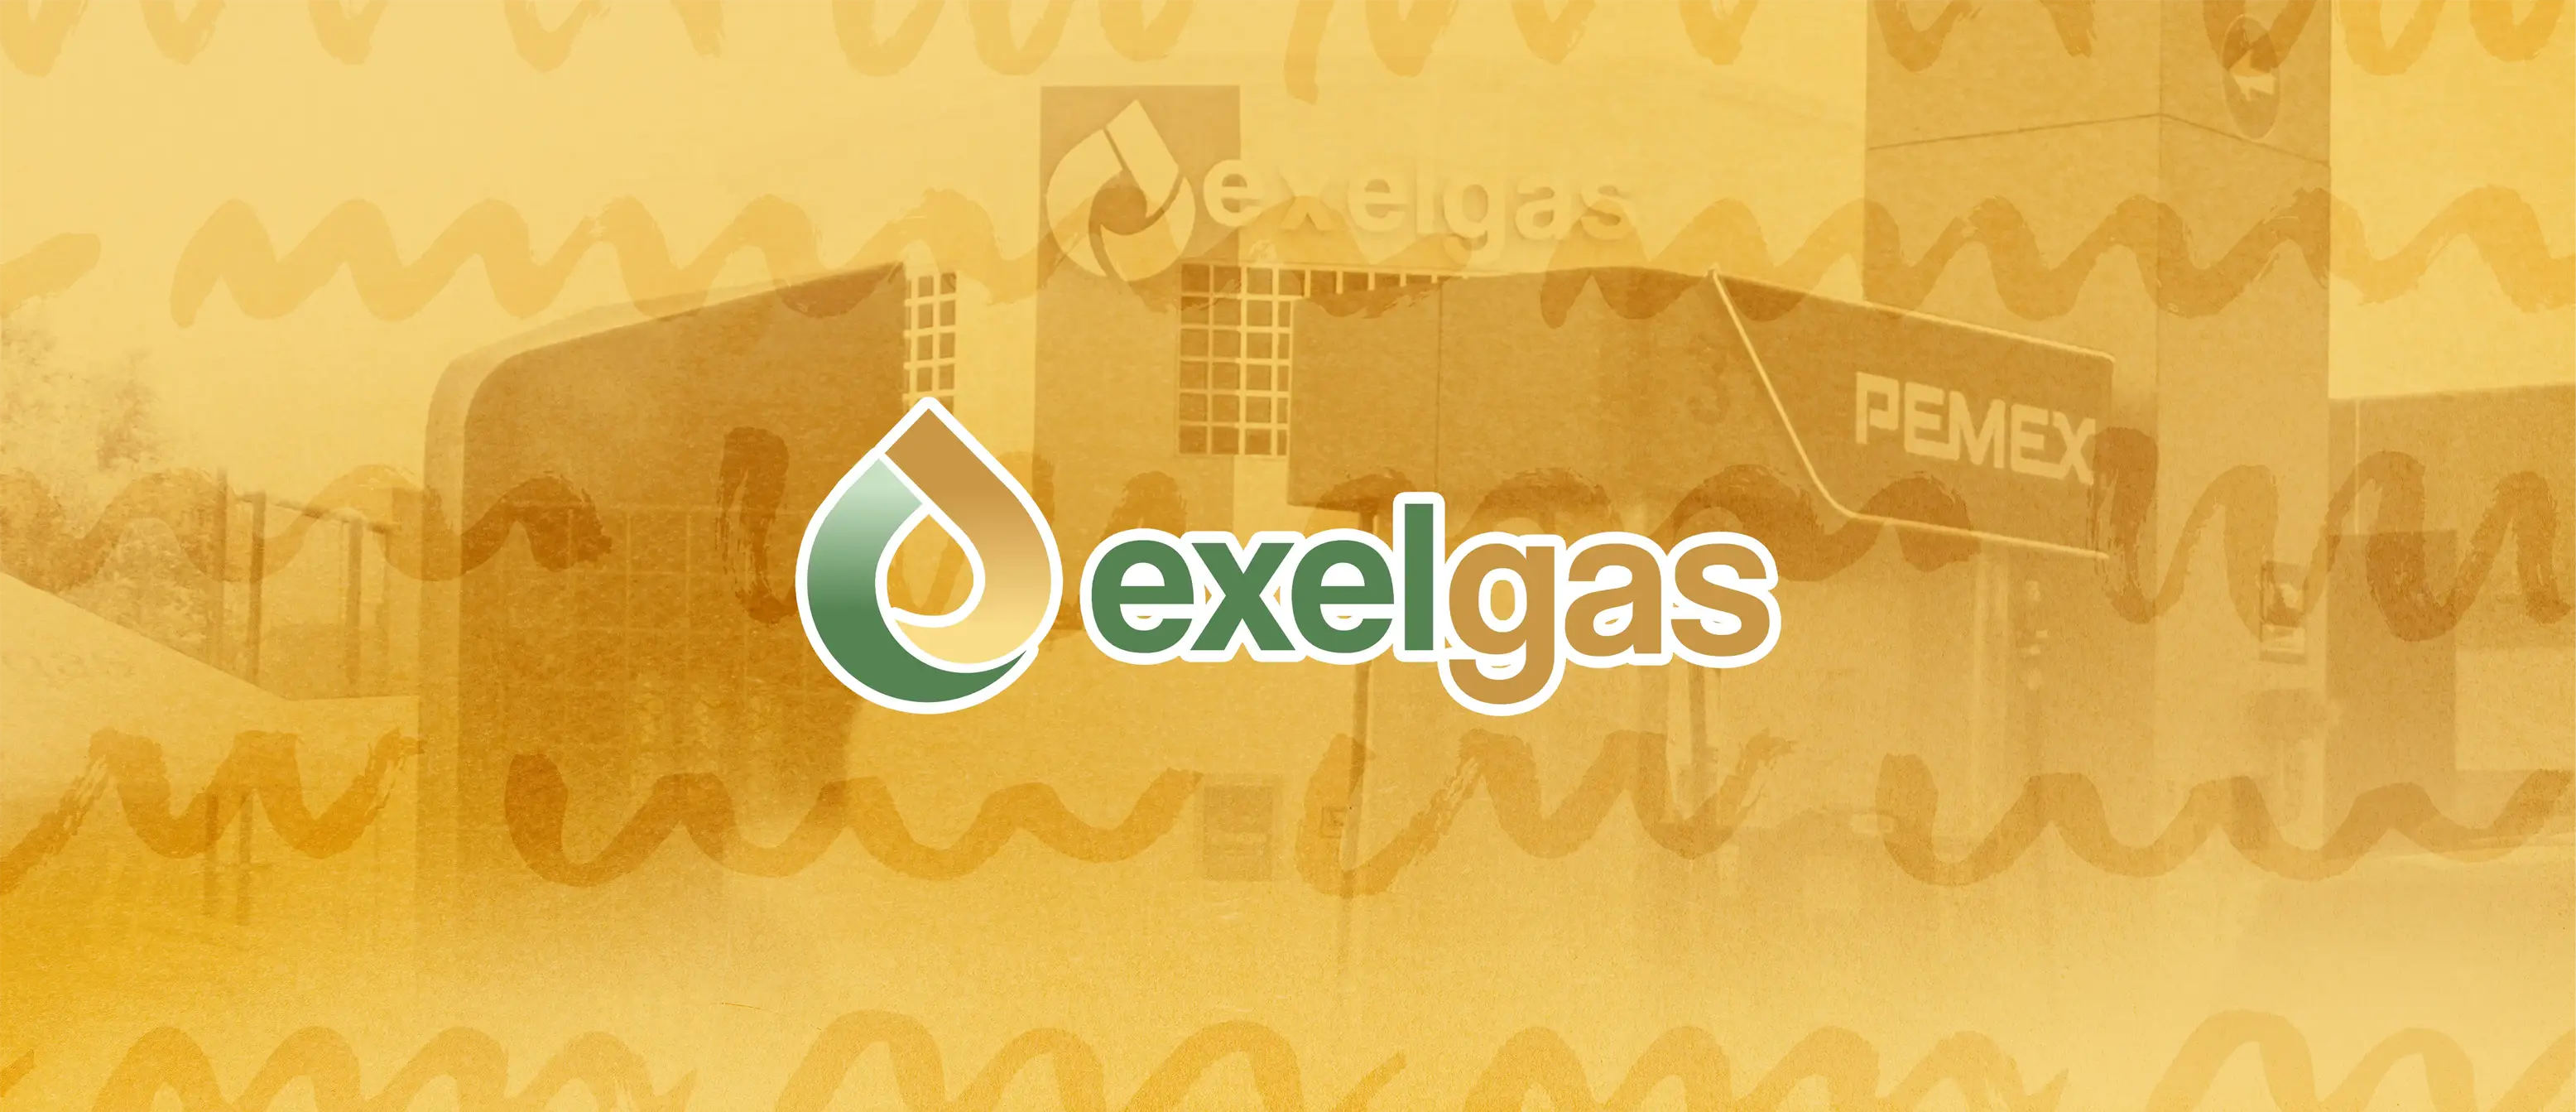 Exelgas logo